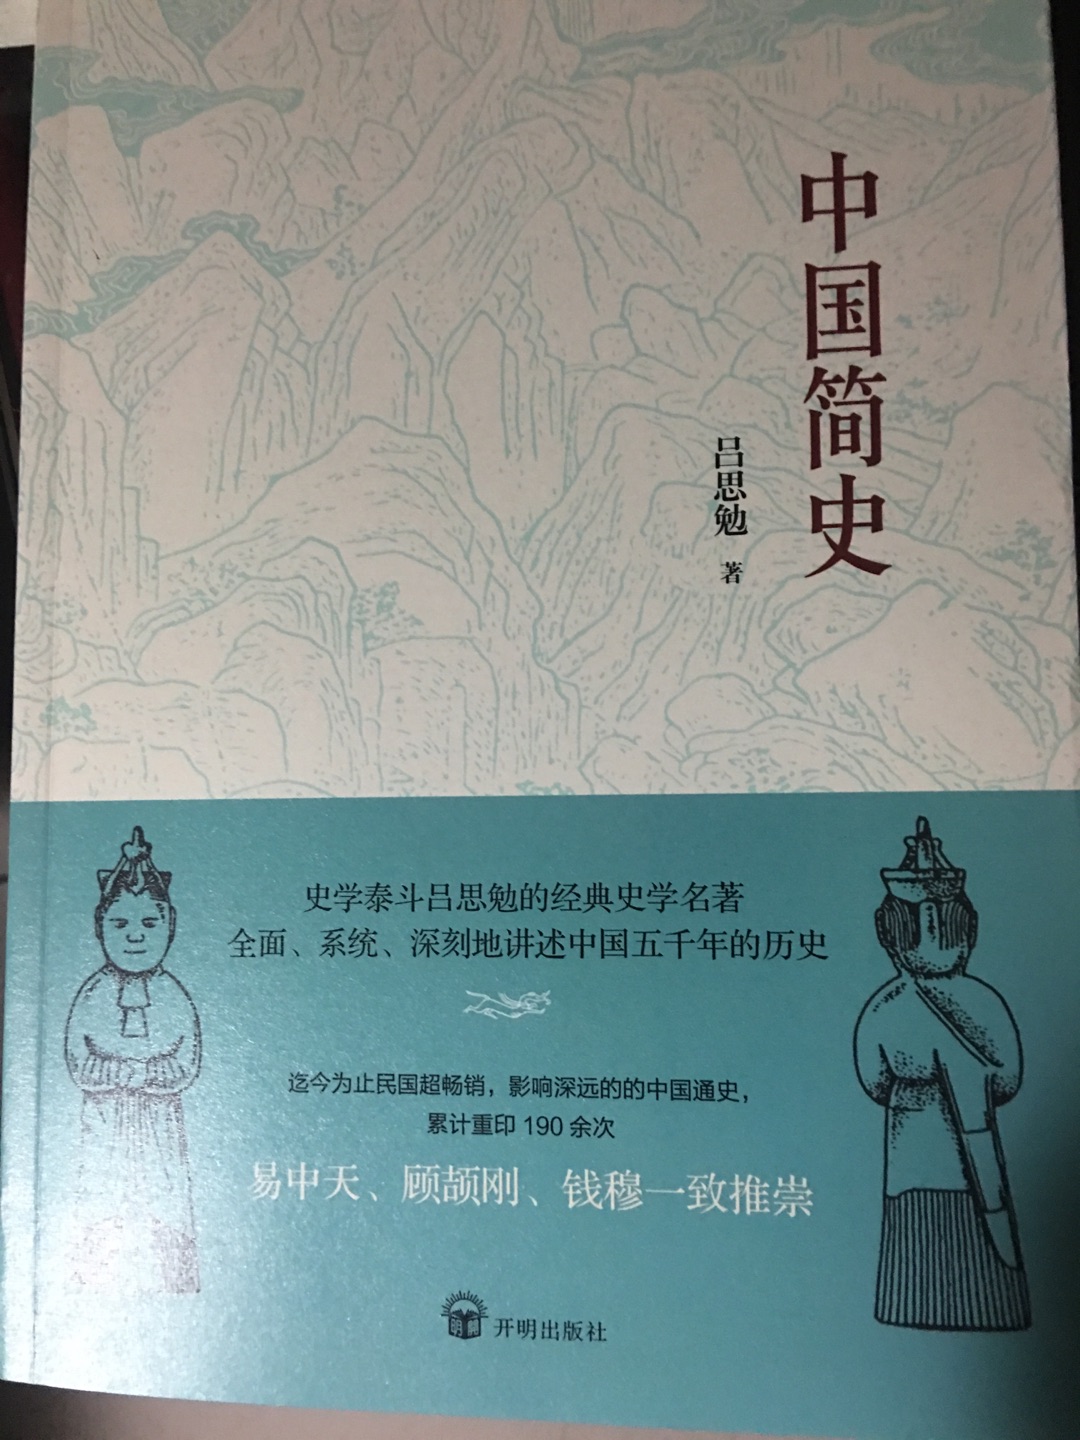 中国简史，涵盖了所有中国的历史，一本好书。